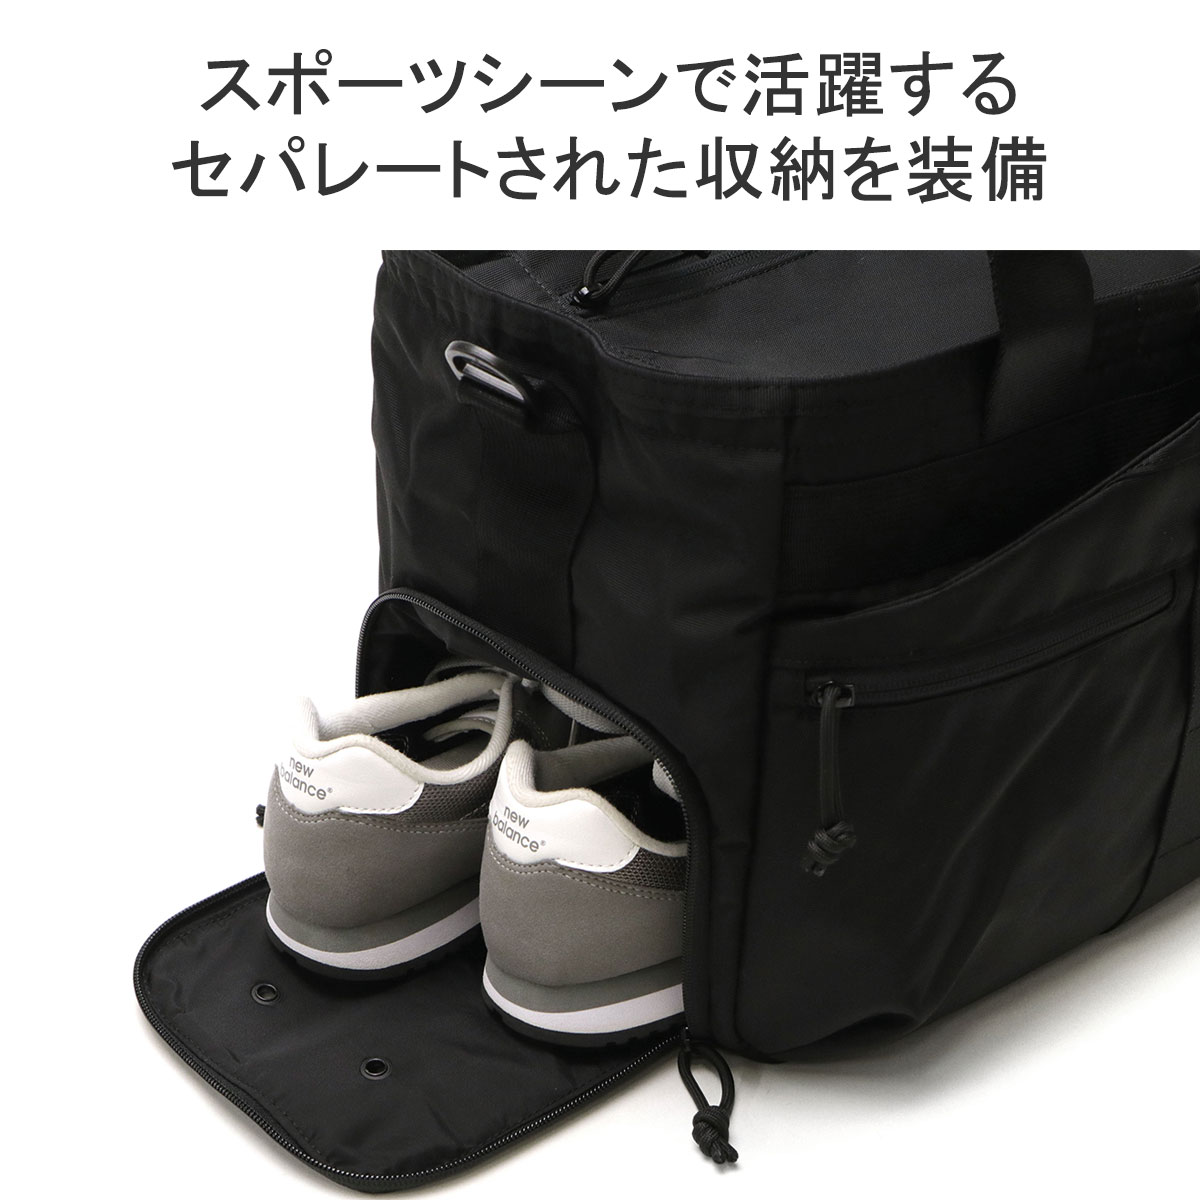 最大40%☆4/25限定 日本正規品 ブリーフィング トートバッグ メンズ 